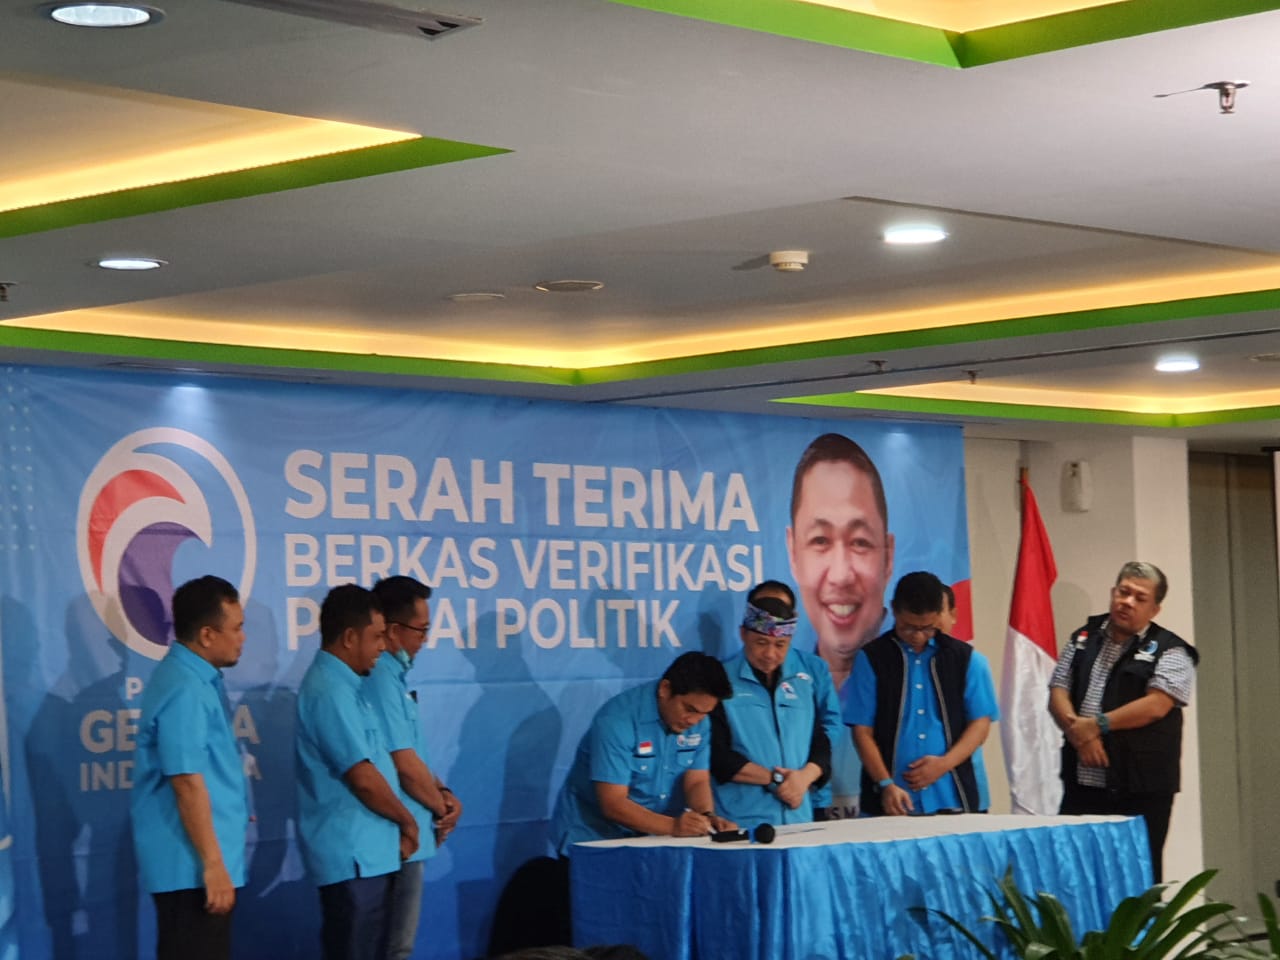 Partai Gelora Kaltara Serahkan Pemberkasan Verpol, Surya Yuniza: Kami Sudah Siap Ikut Pemilu 2024